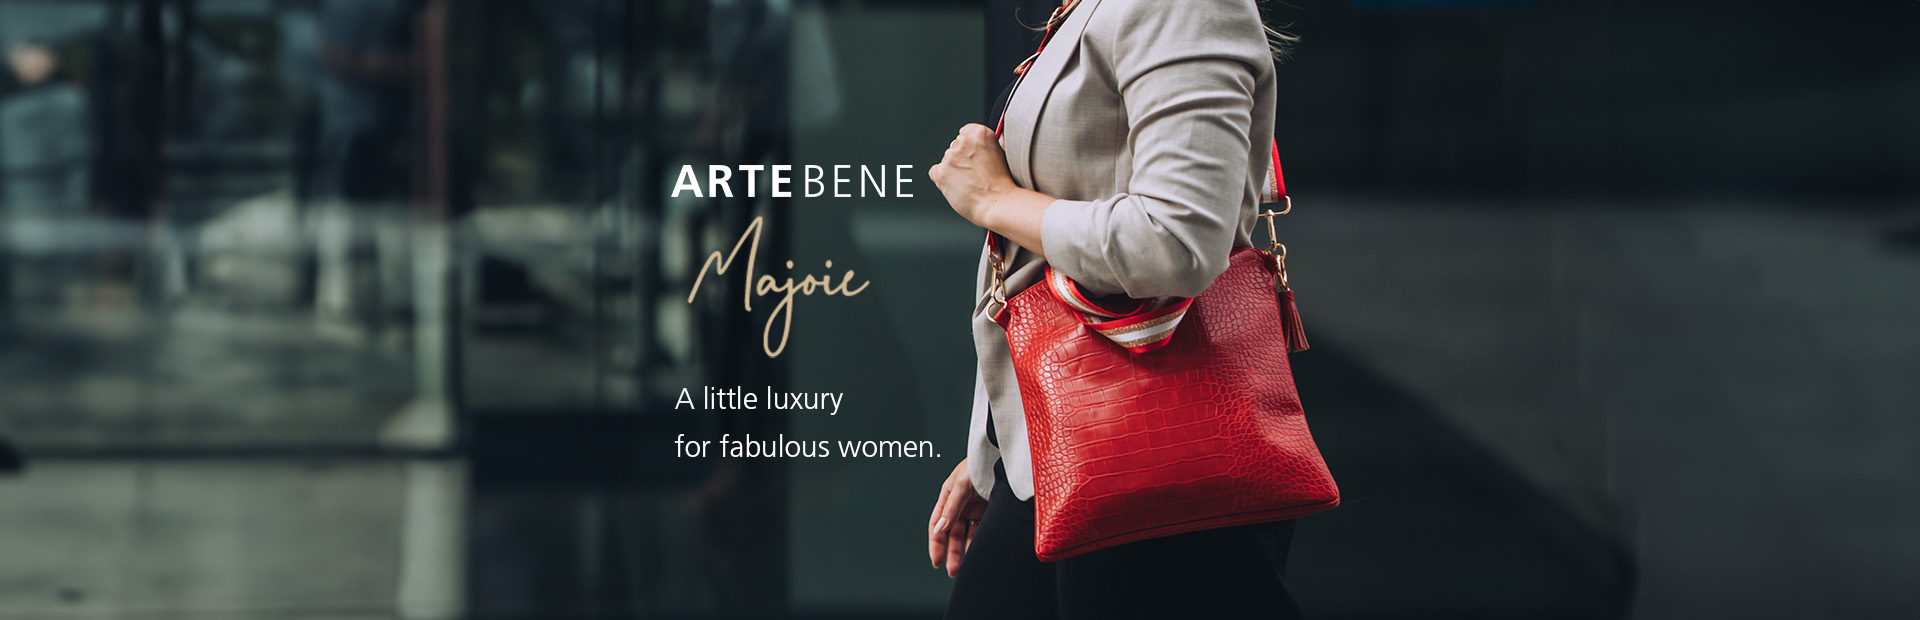 ARTEBENE MAJOIE - A little luxury for fabulous women